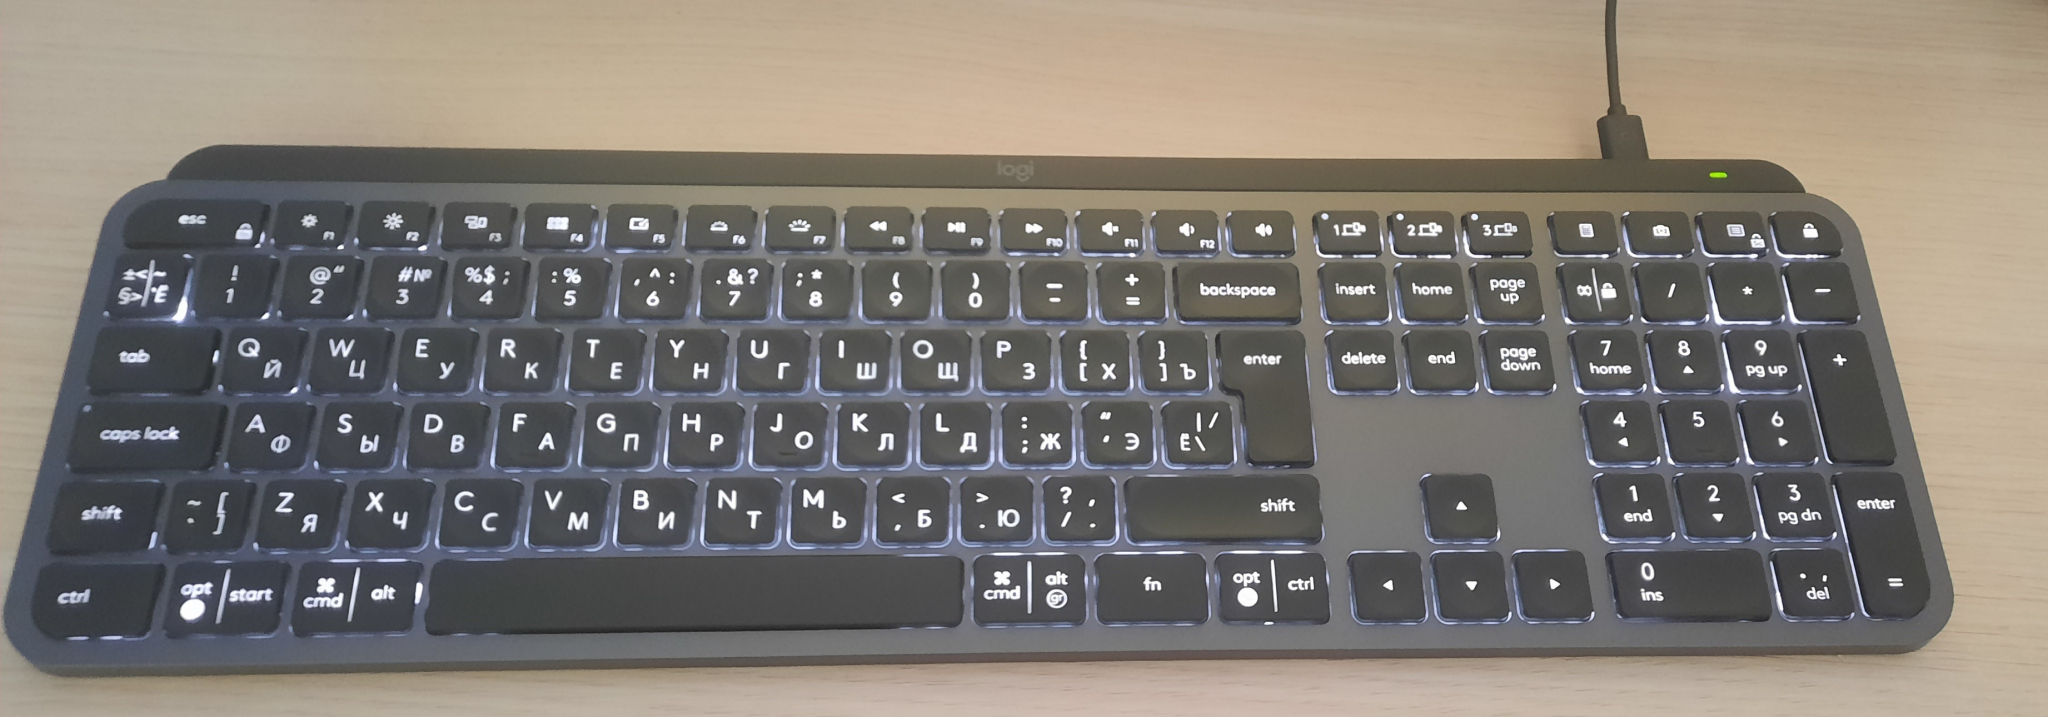 Настройка времени выключения подсветки клавиатуры в PC Manager | HUAWEI Поддержка Россия